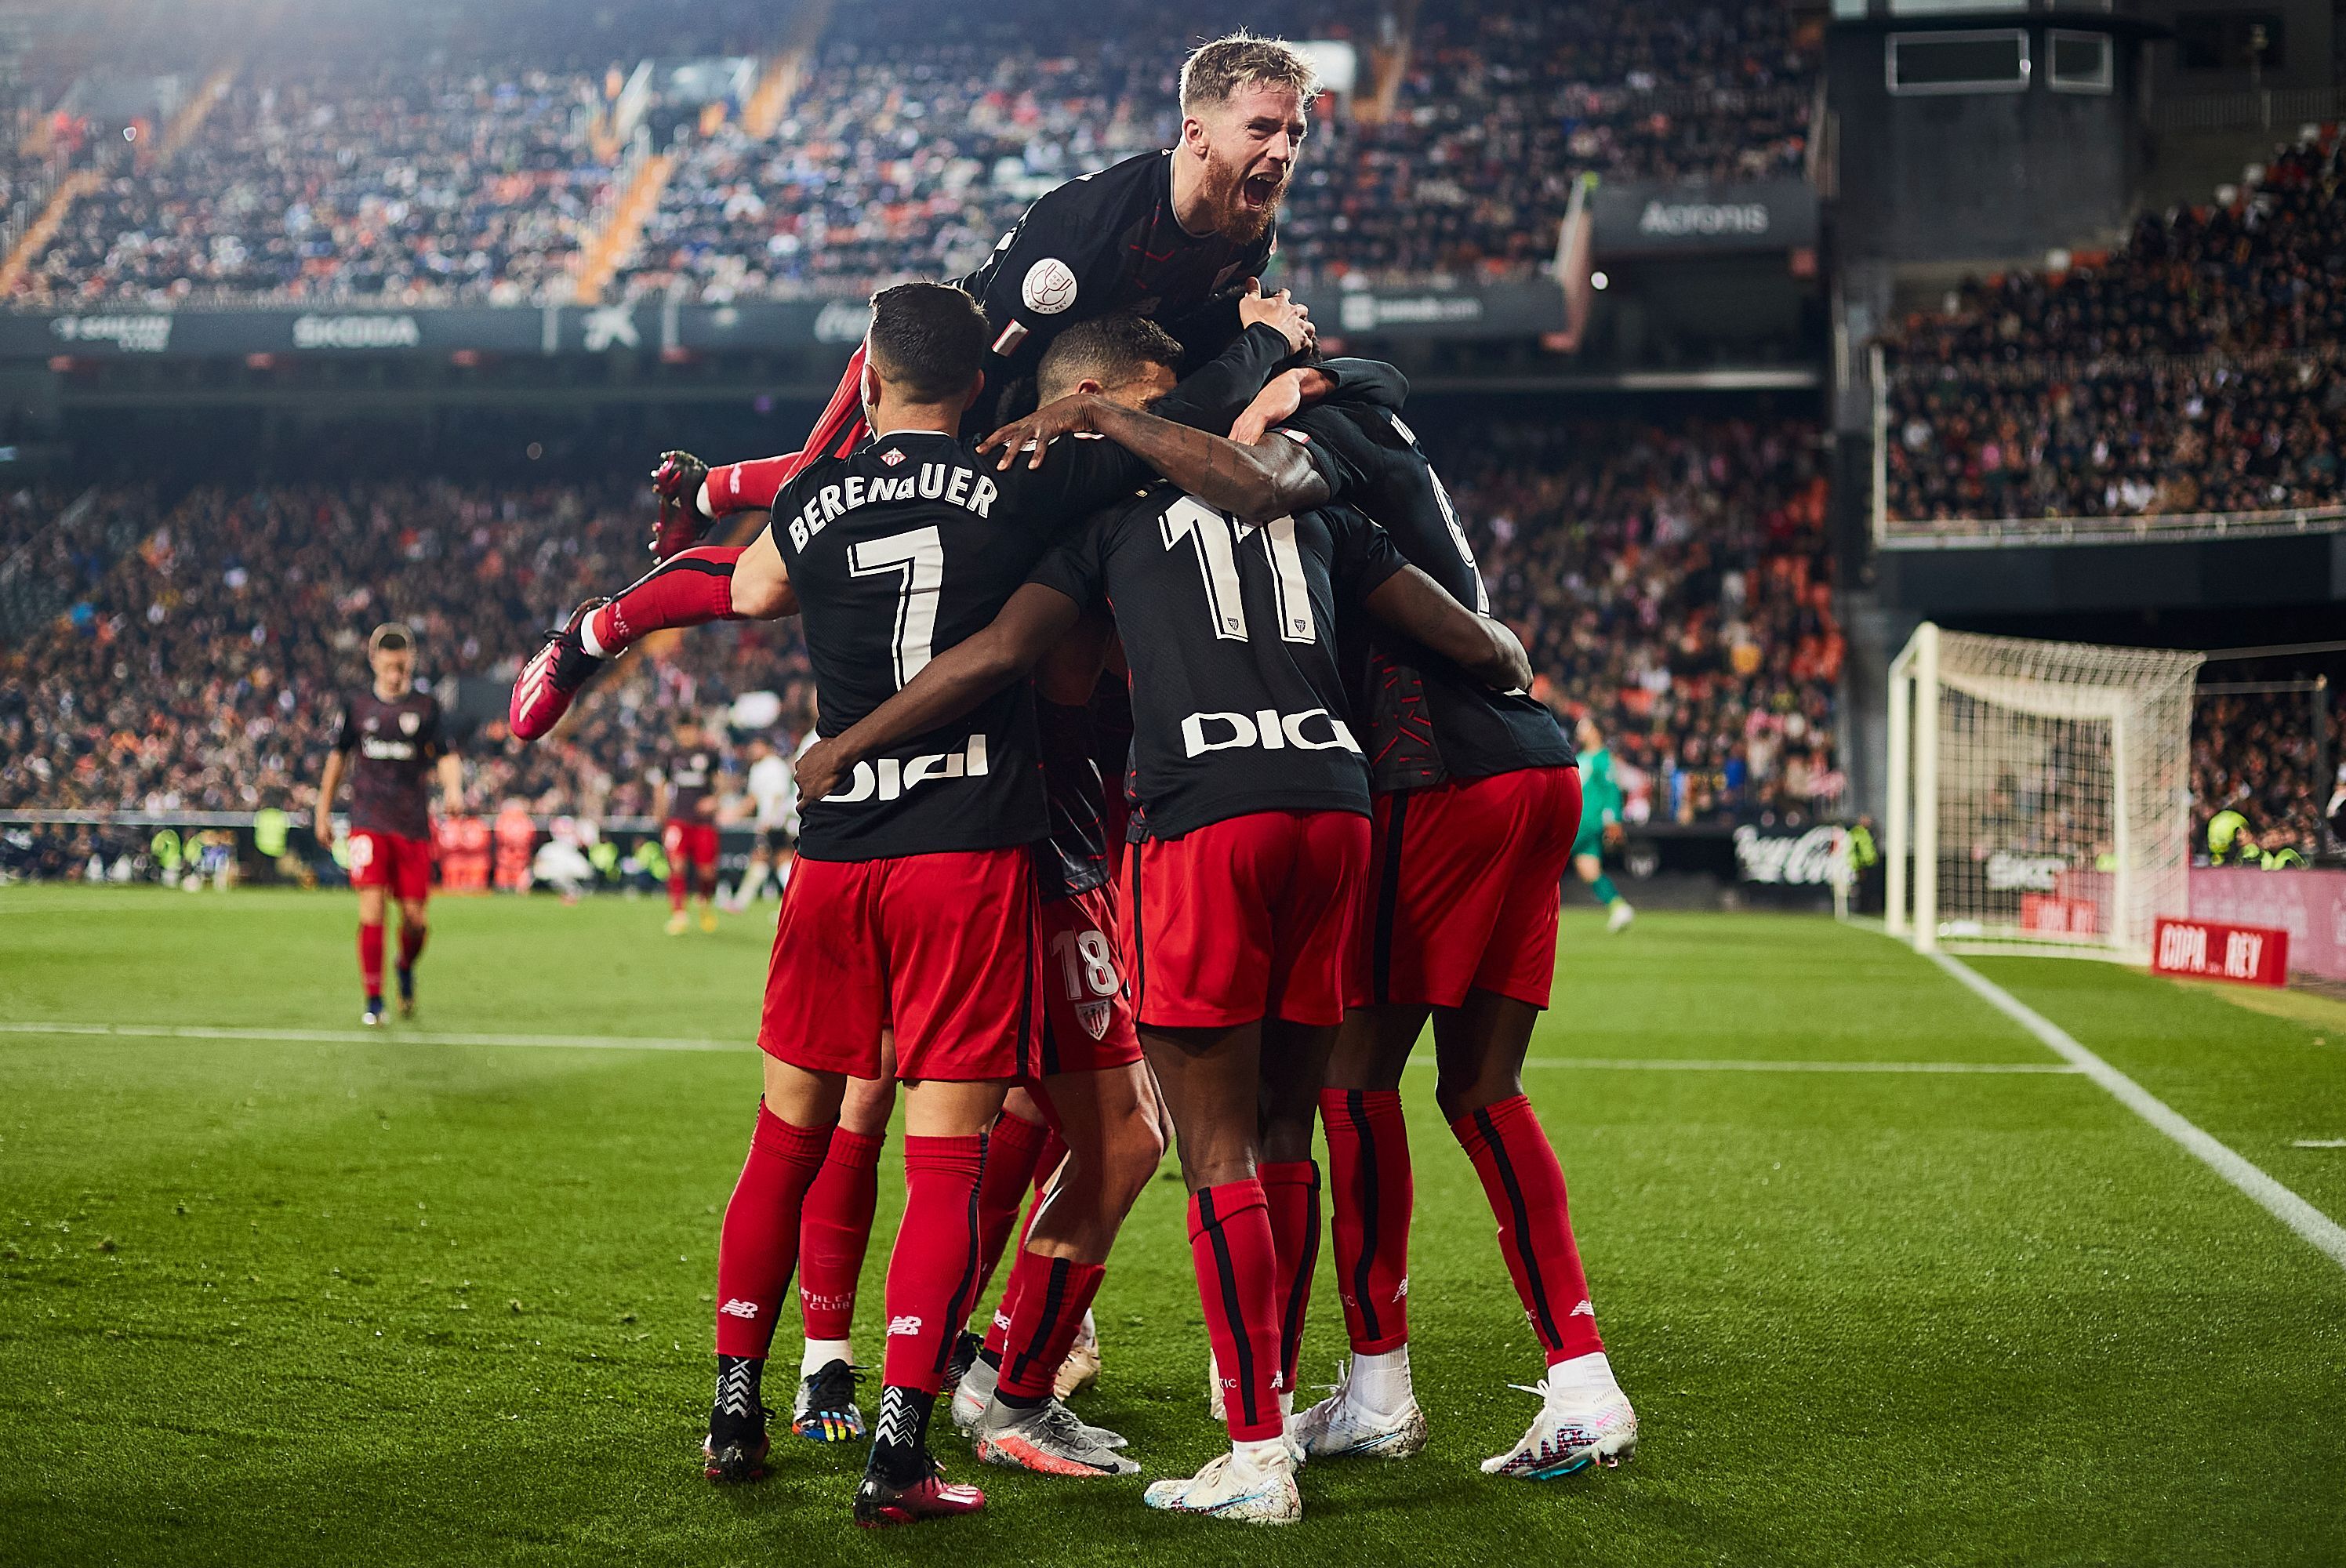 Valencia - Atletico Bilbao 1-3. A treia echipă care se califică în semifinalele Cupei Regelui